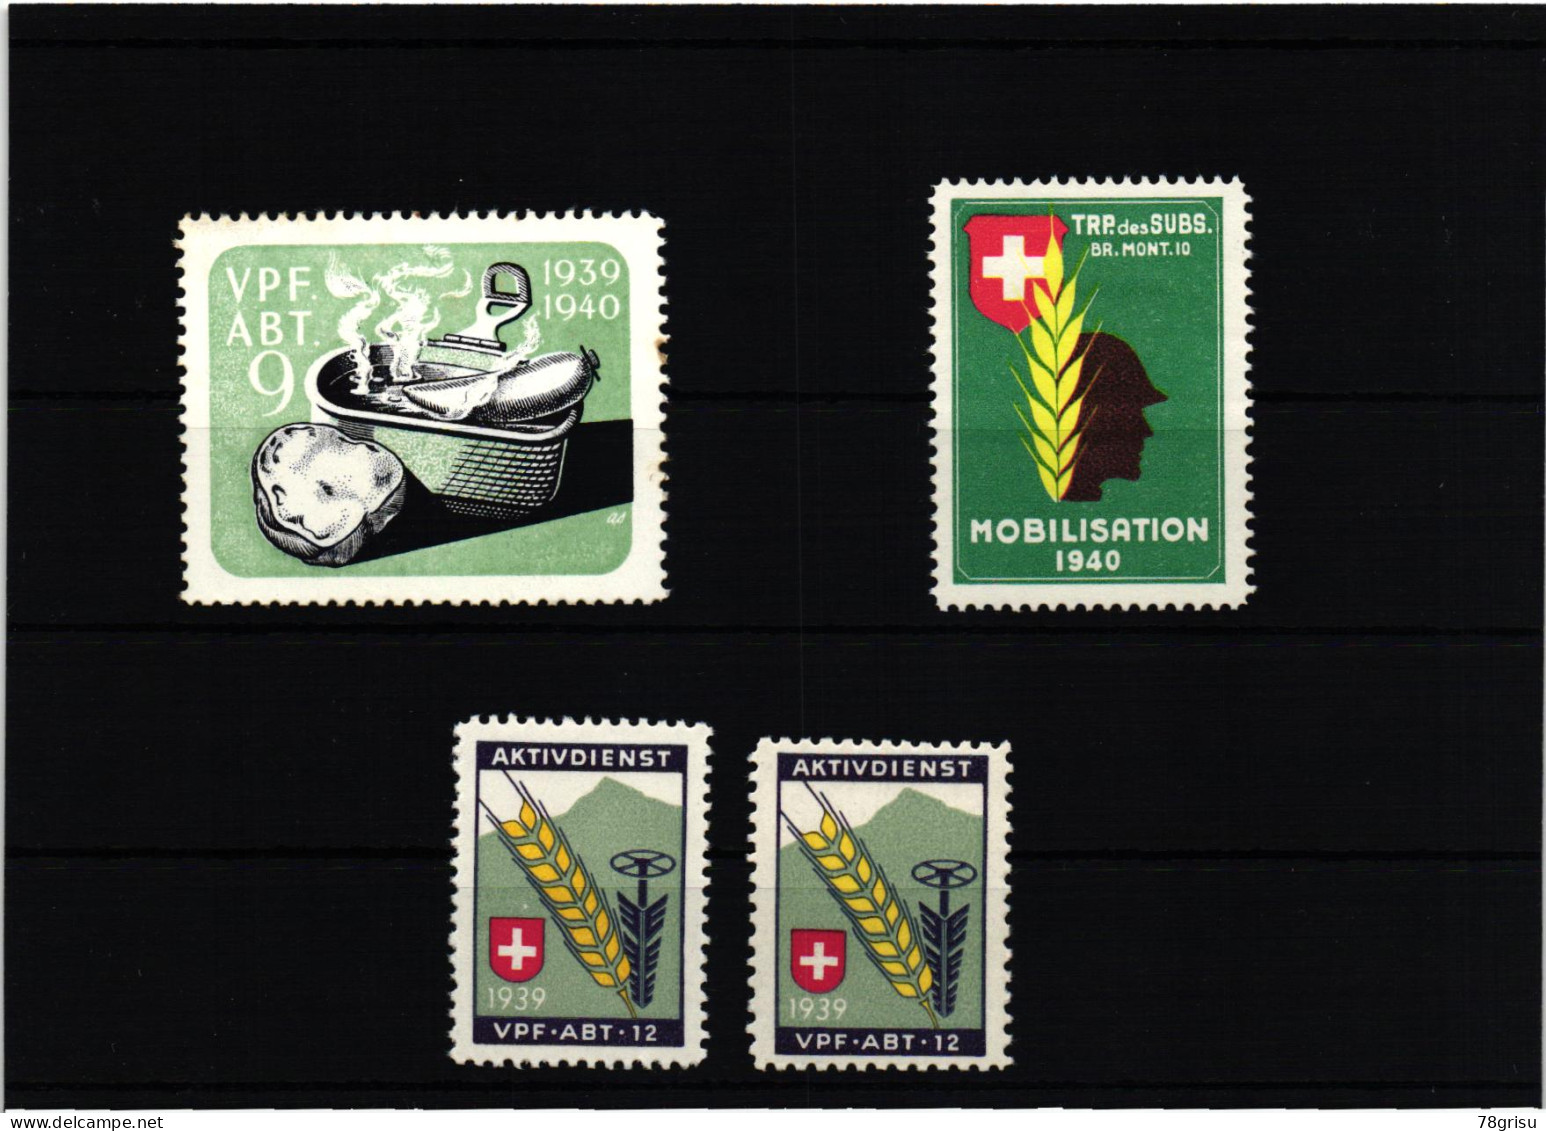 Schweiz Soldatenmarken, Vpf.Abt. Verpflegungs Abteilung 1939 1940 TRP. Des SUBS.  - Vignetten